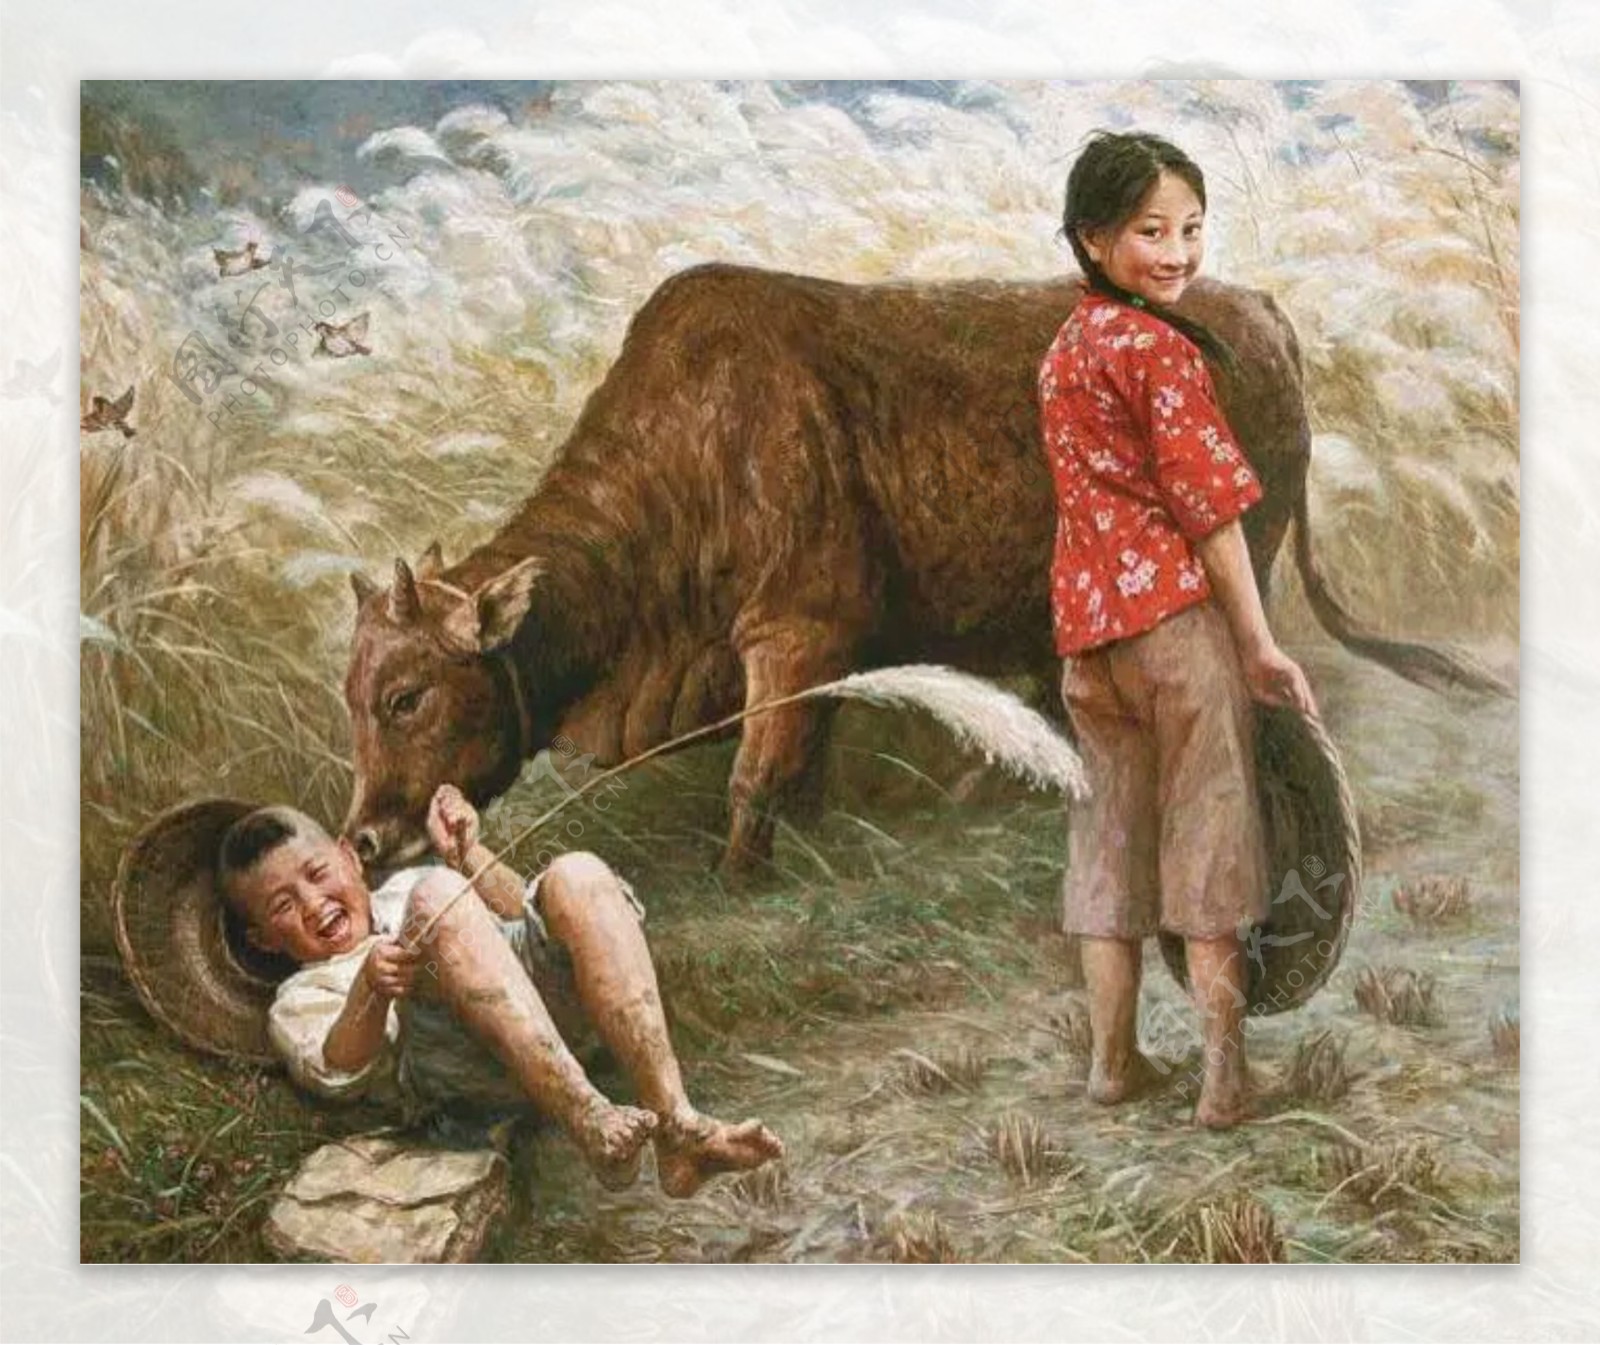 农村小孩油画